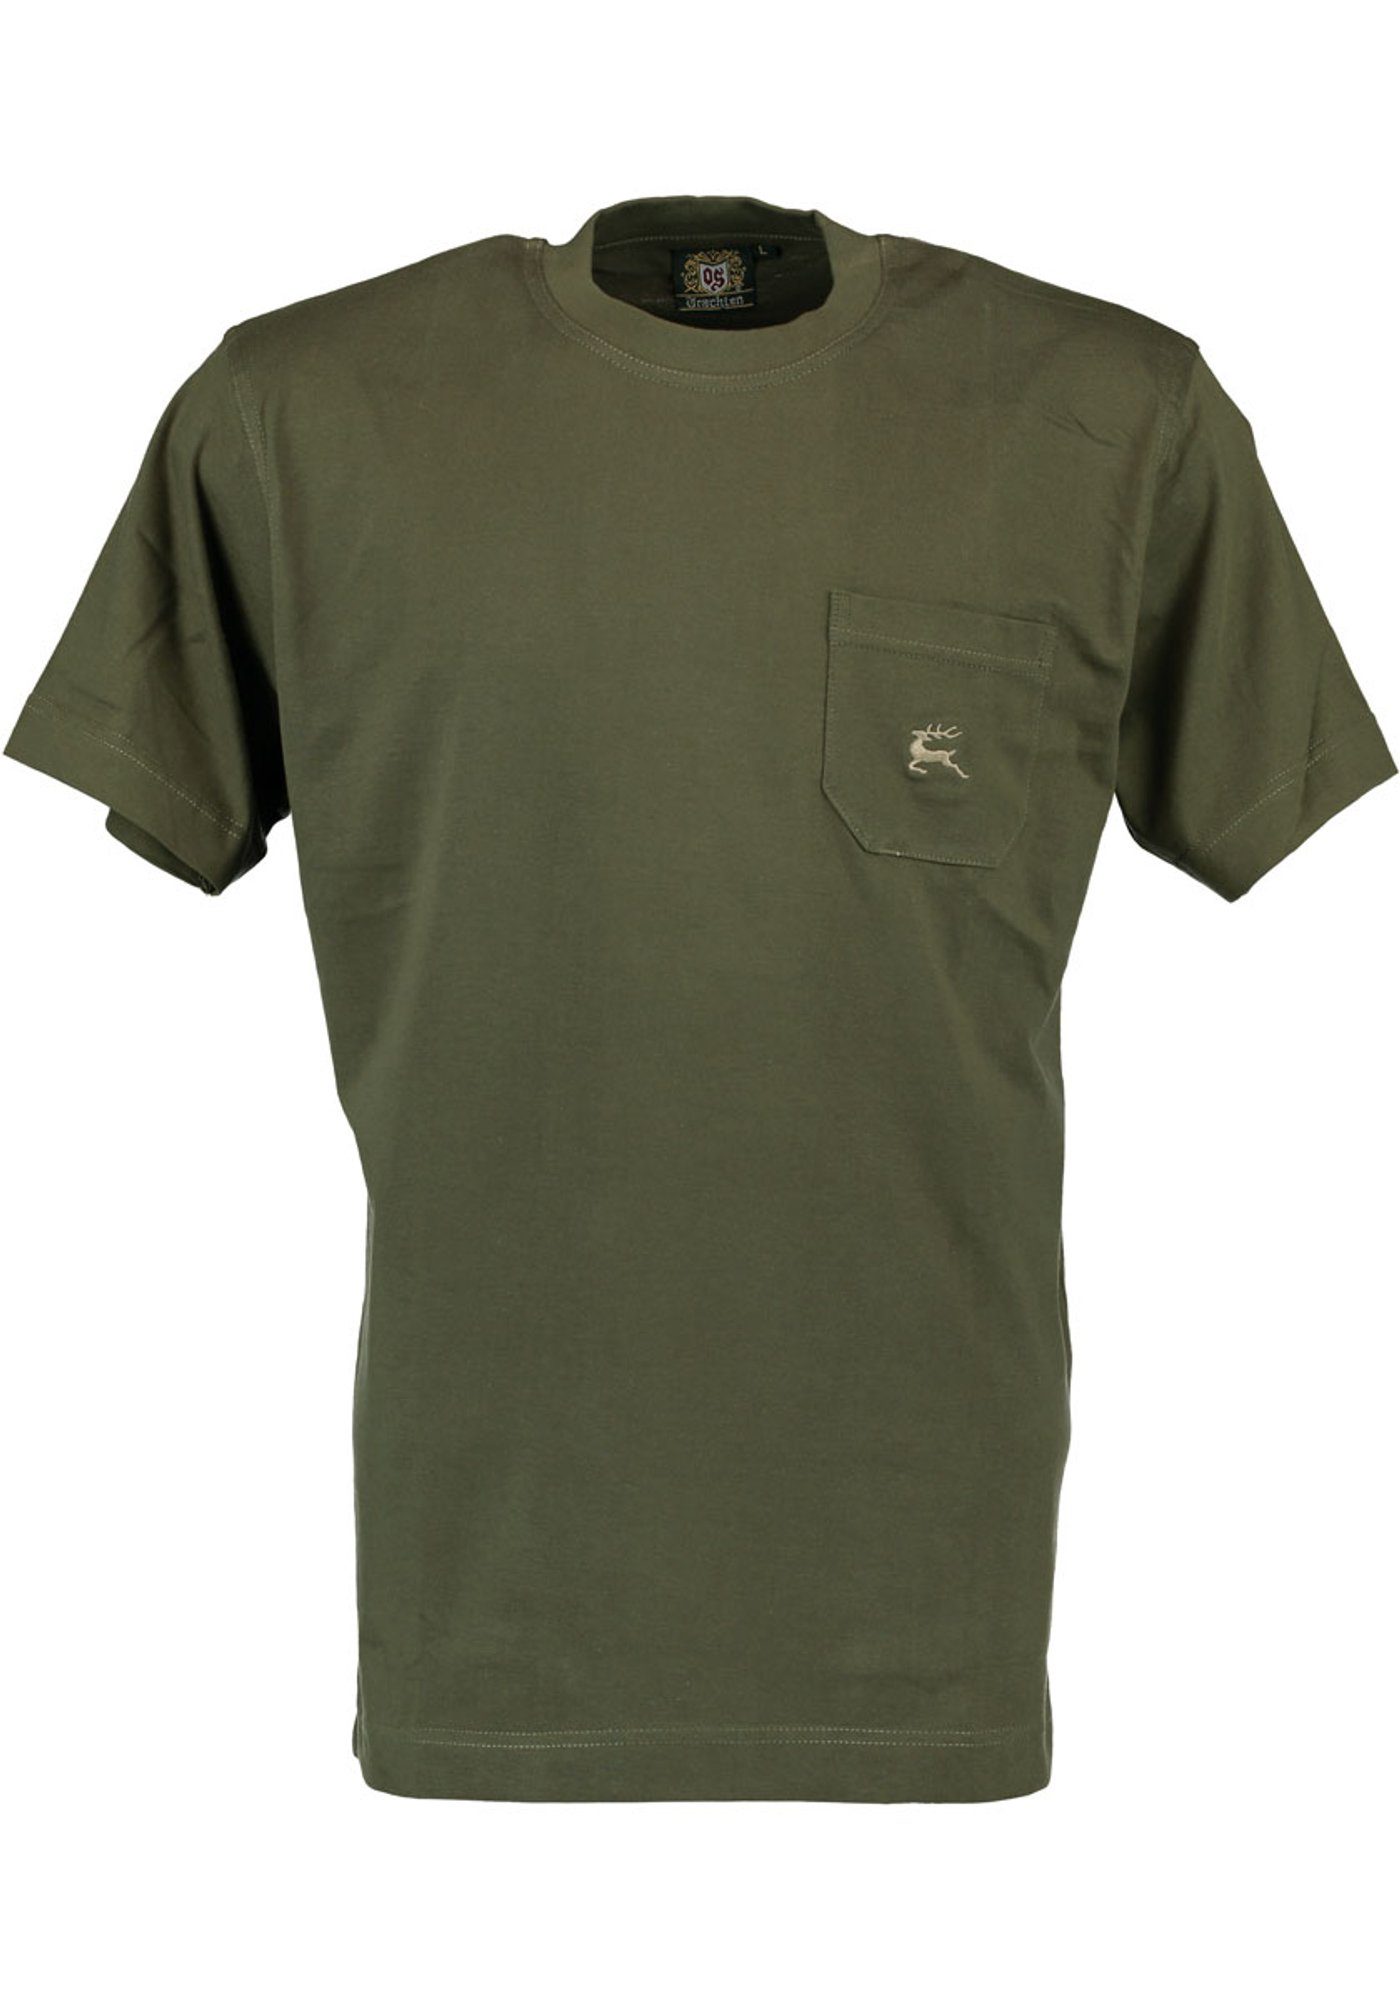 OS-Trachten T-Shirt Najio Herren Kurzarmshirt mit Hirsch-Stickerei auf der Brusttasche oliv